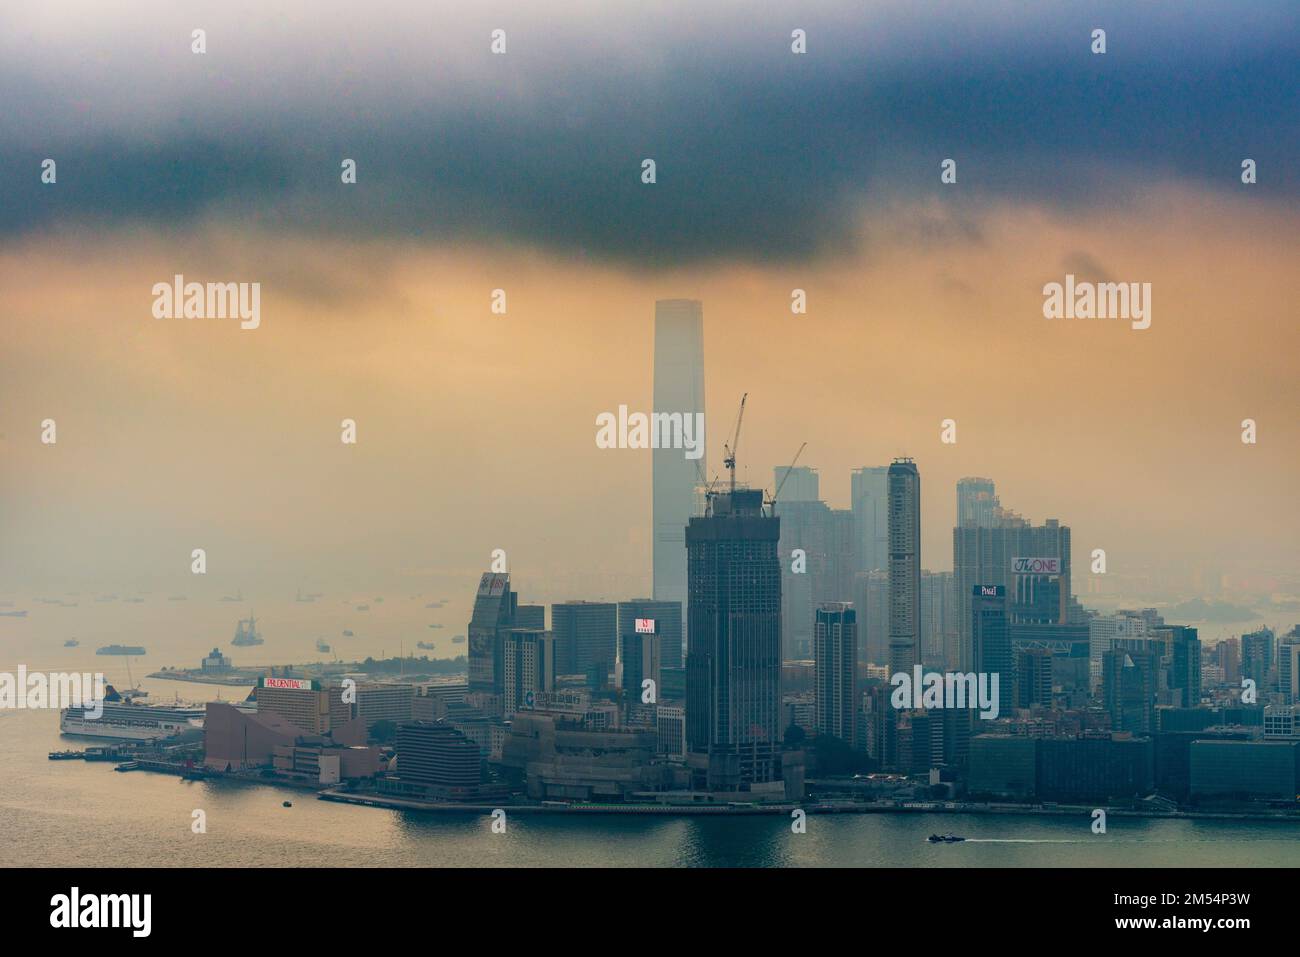 Une tempête imminente se combine au smog pour envelopper les gratte-ciel de Kowloon, Hong Kong, 2016 Banque D'Images